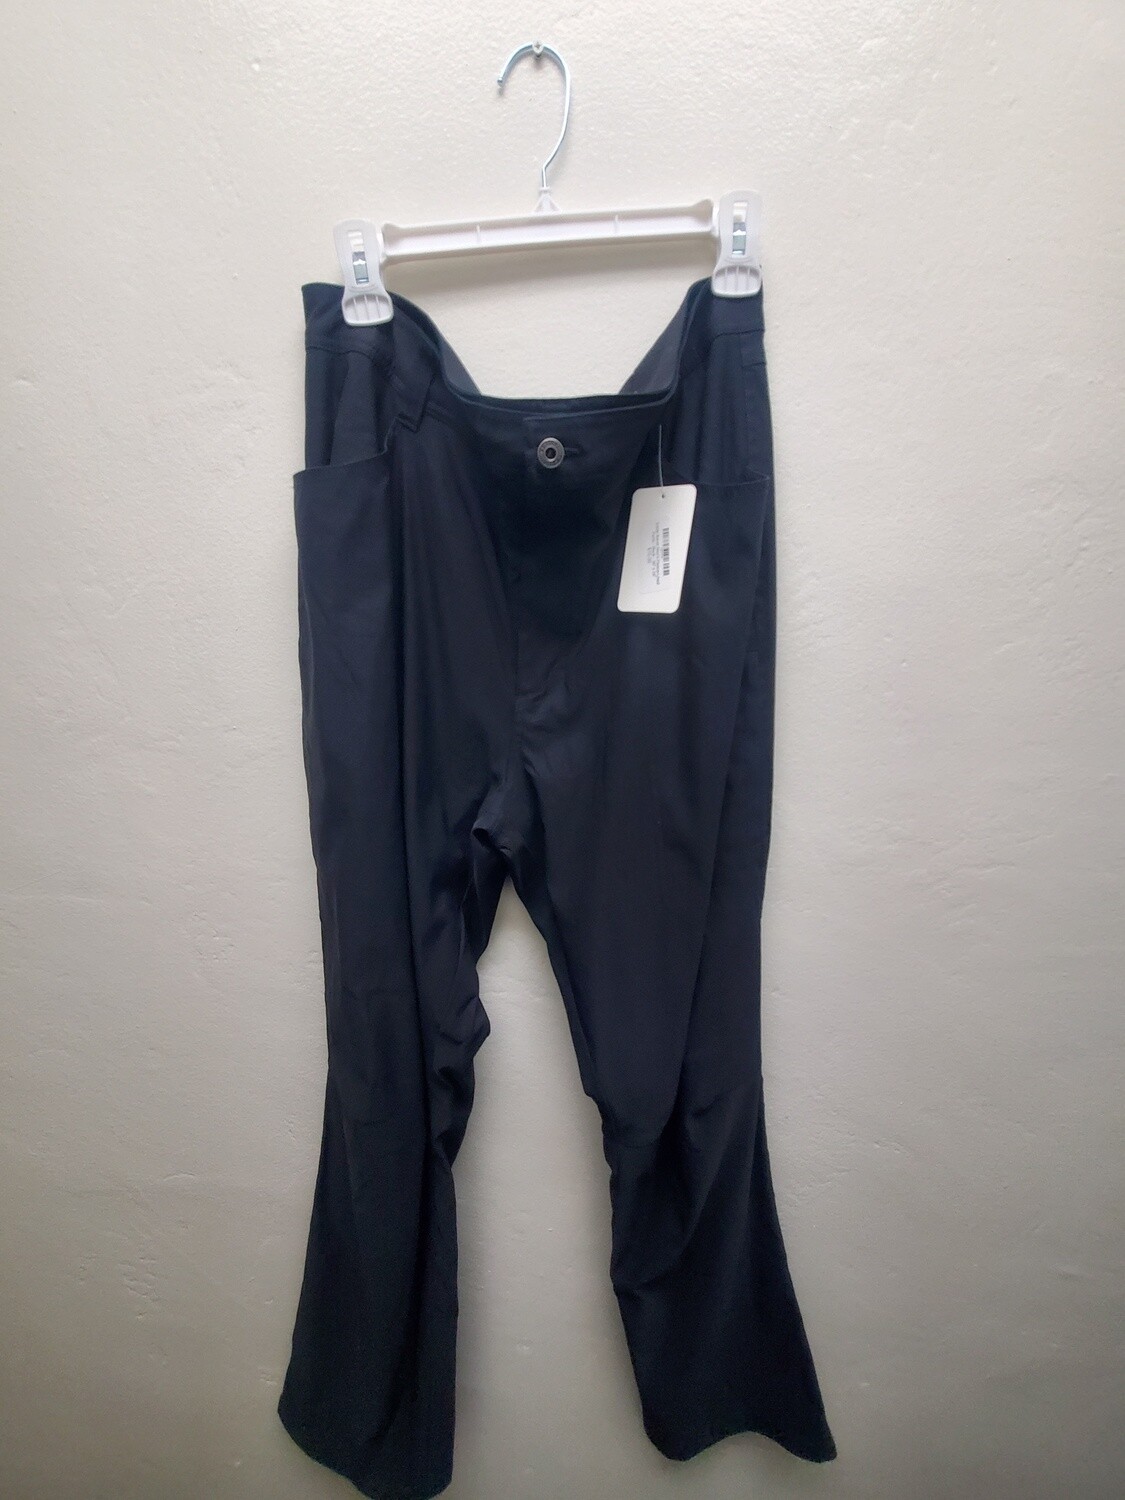 Eddie Bauer Men's Fleece-Lined Pants - Black - 36 x 34